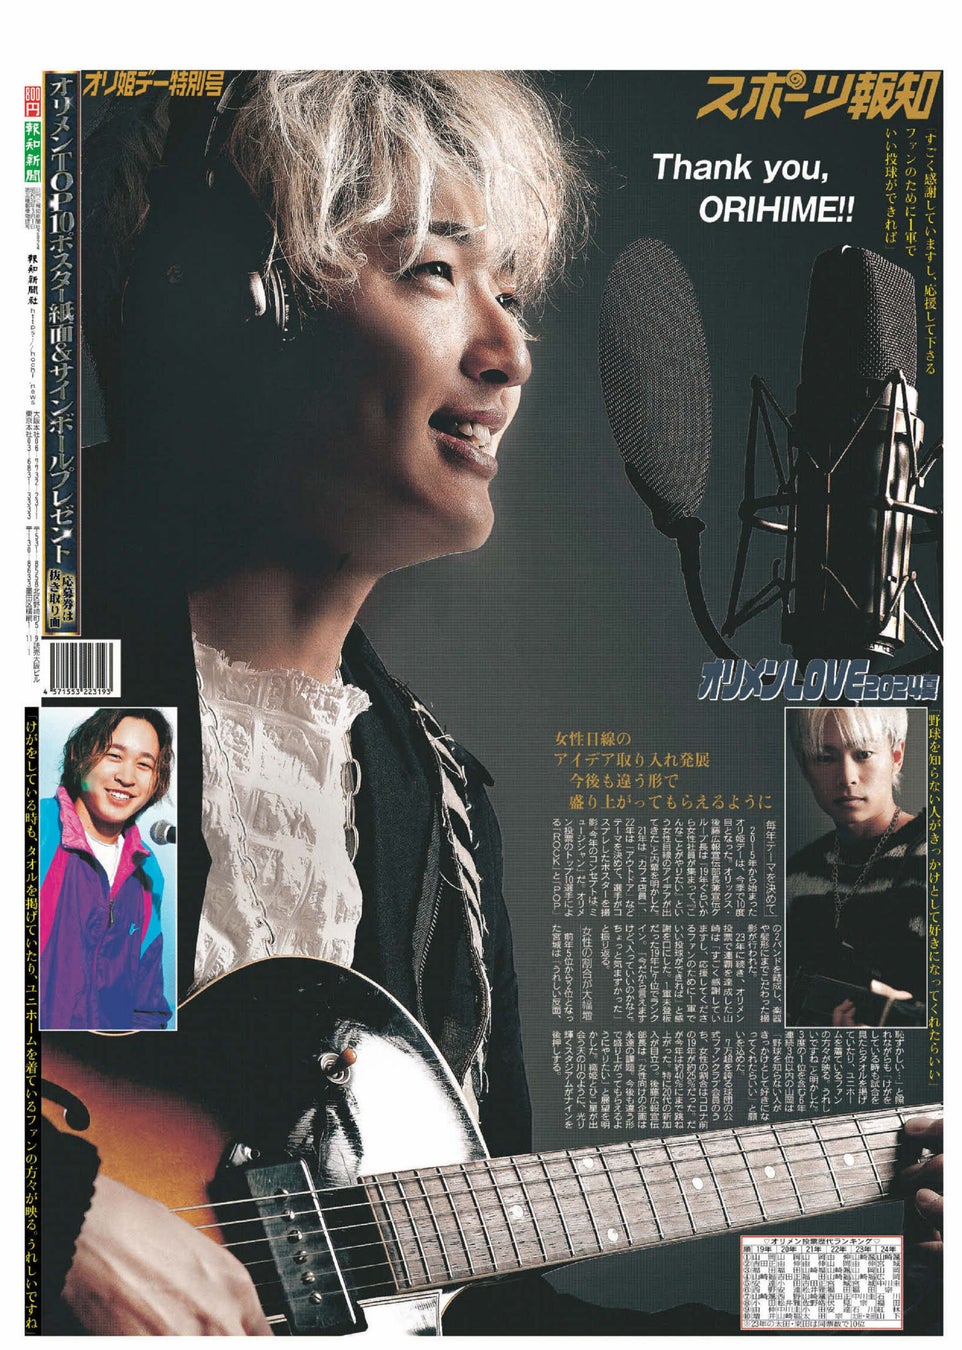 オリックスのタブロイド新聞「オリ姫デー特別号」20日(木)発売